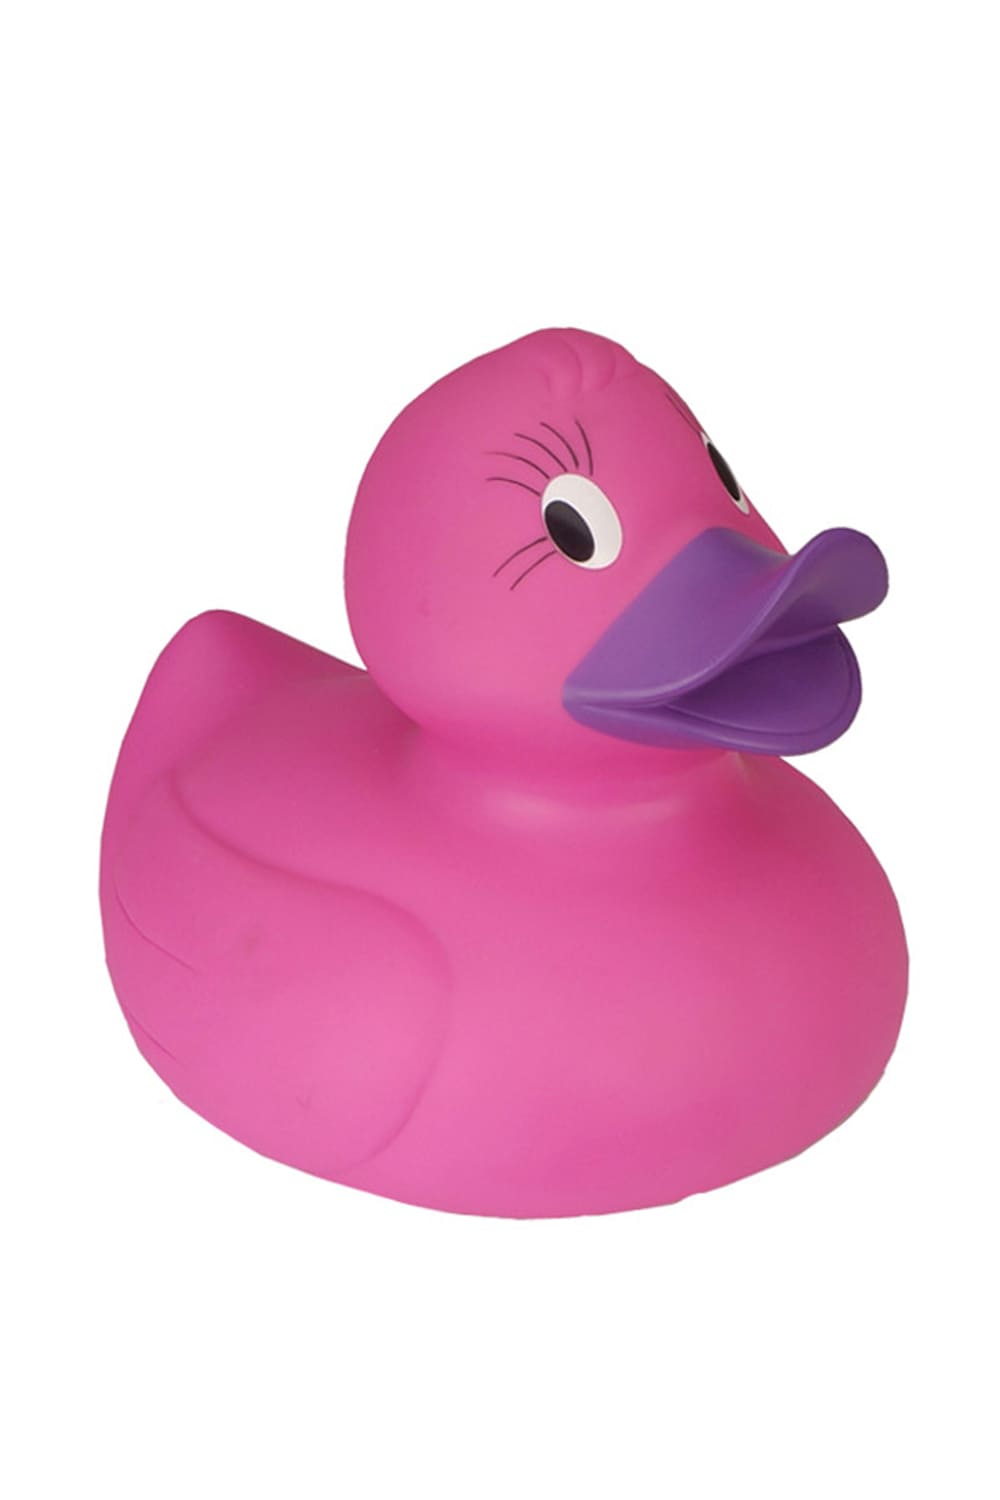 Diese XXL Badeente in der Farbe pink ist ca. 30 cm. Eine aussergewoehnliche Groesse fuer eine Badeente und genau dies macht diese XXL Badeente zu einem sehr speziellen Geschenk. Perfekt fuer alle Badeenten Liebhaber. Die Grosse Bade Ente mit Pfiff! 